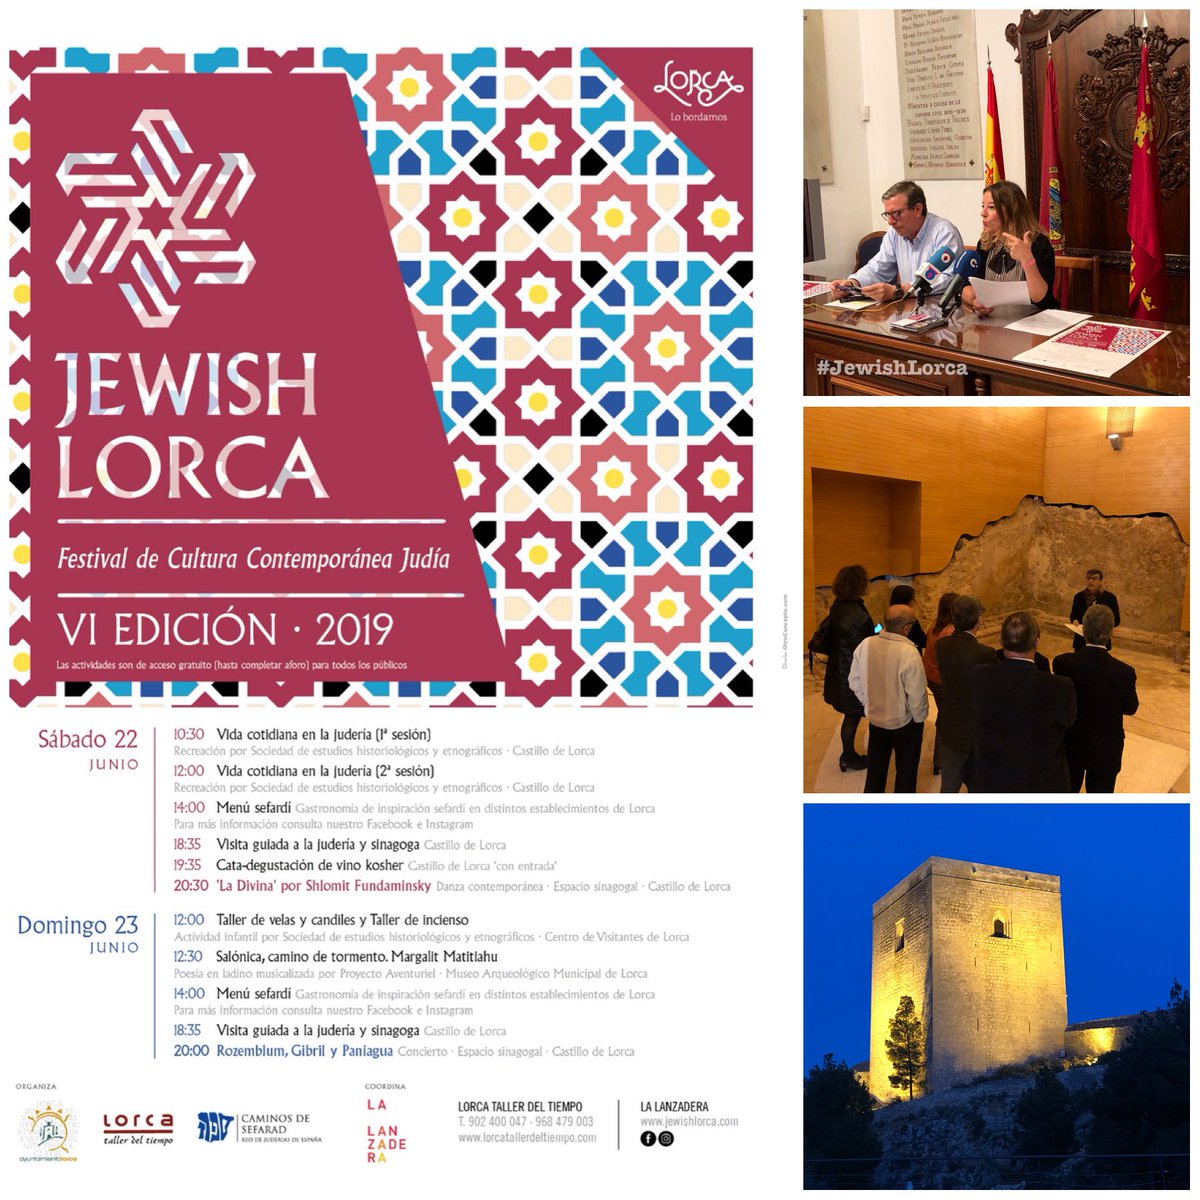 Los días 22 y 23 de junio se celebró el 6º Festival de Cultura Contemporánea Judía, JEWISH LORCA, que se celebró en diferentes localizaciones dentro del Castillo de Lorca y en otros puntos de la ciudad.